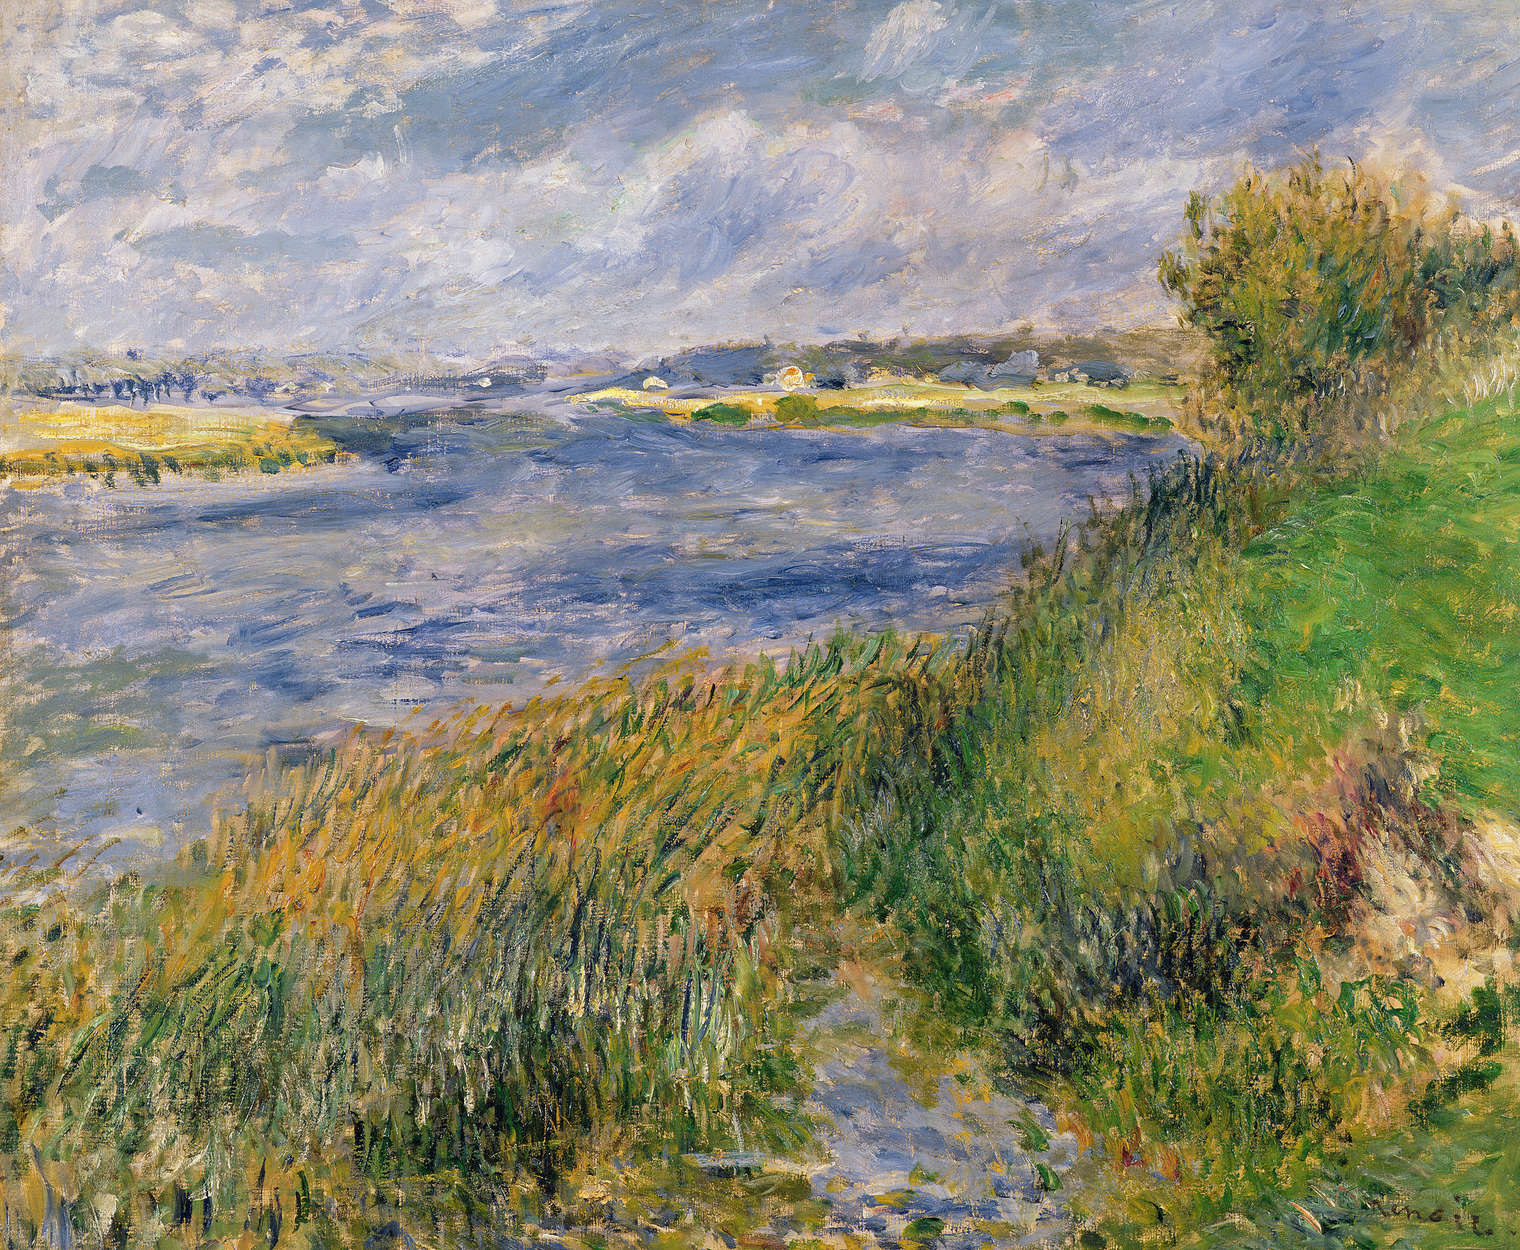             Fototapete "Die Ufer der Seine in Champrosay" von Pierre Auguste Renoir
        